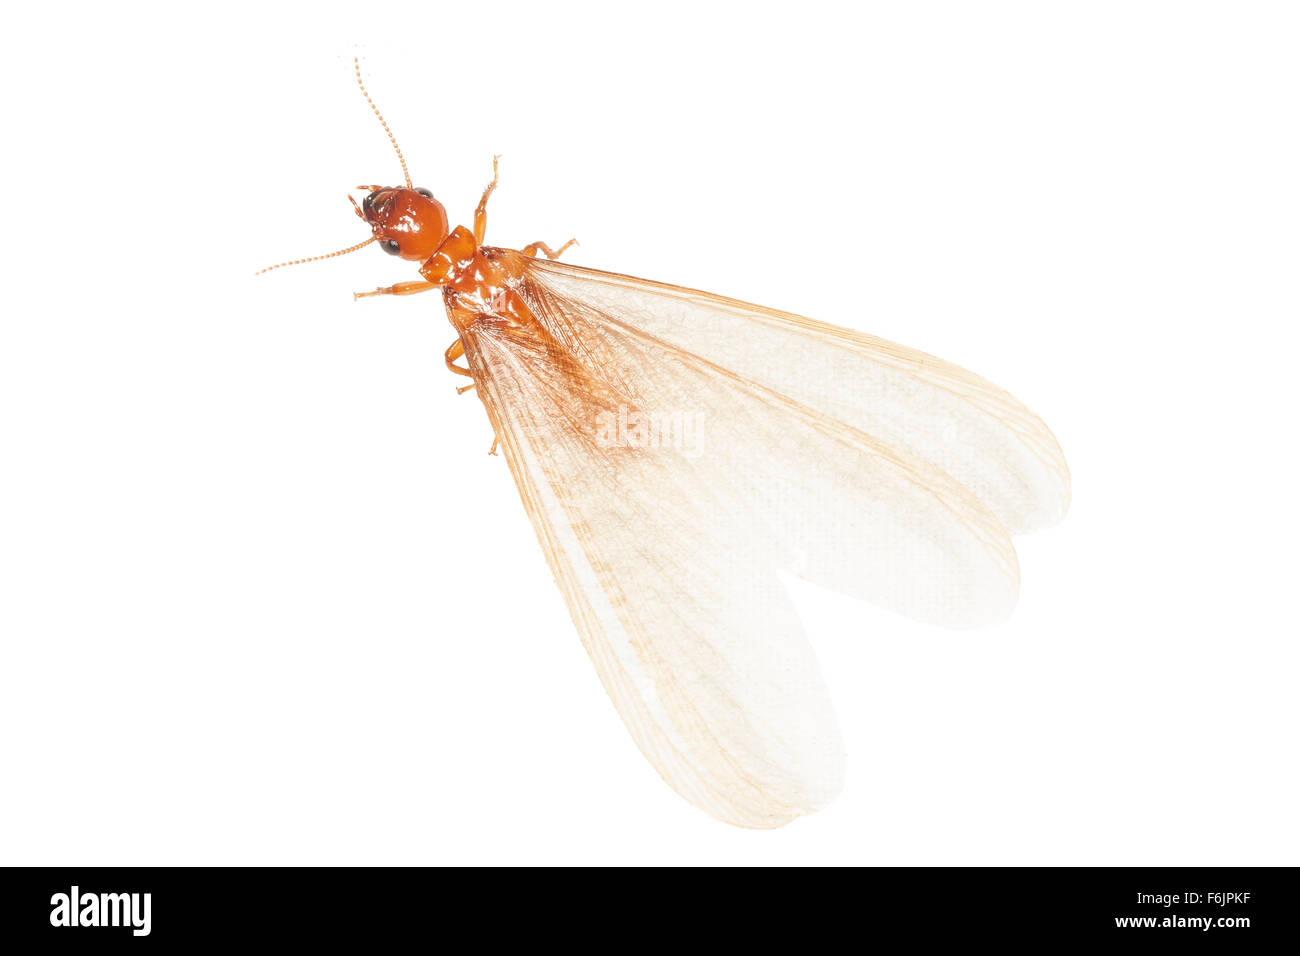 Un adulto alado alate termitas (un). Fotografiado sobre un fondo blanco. Foto de stock